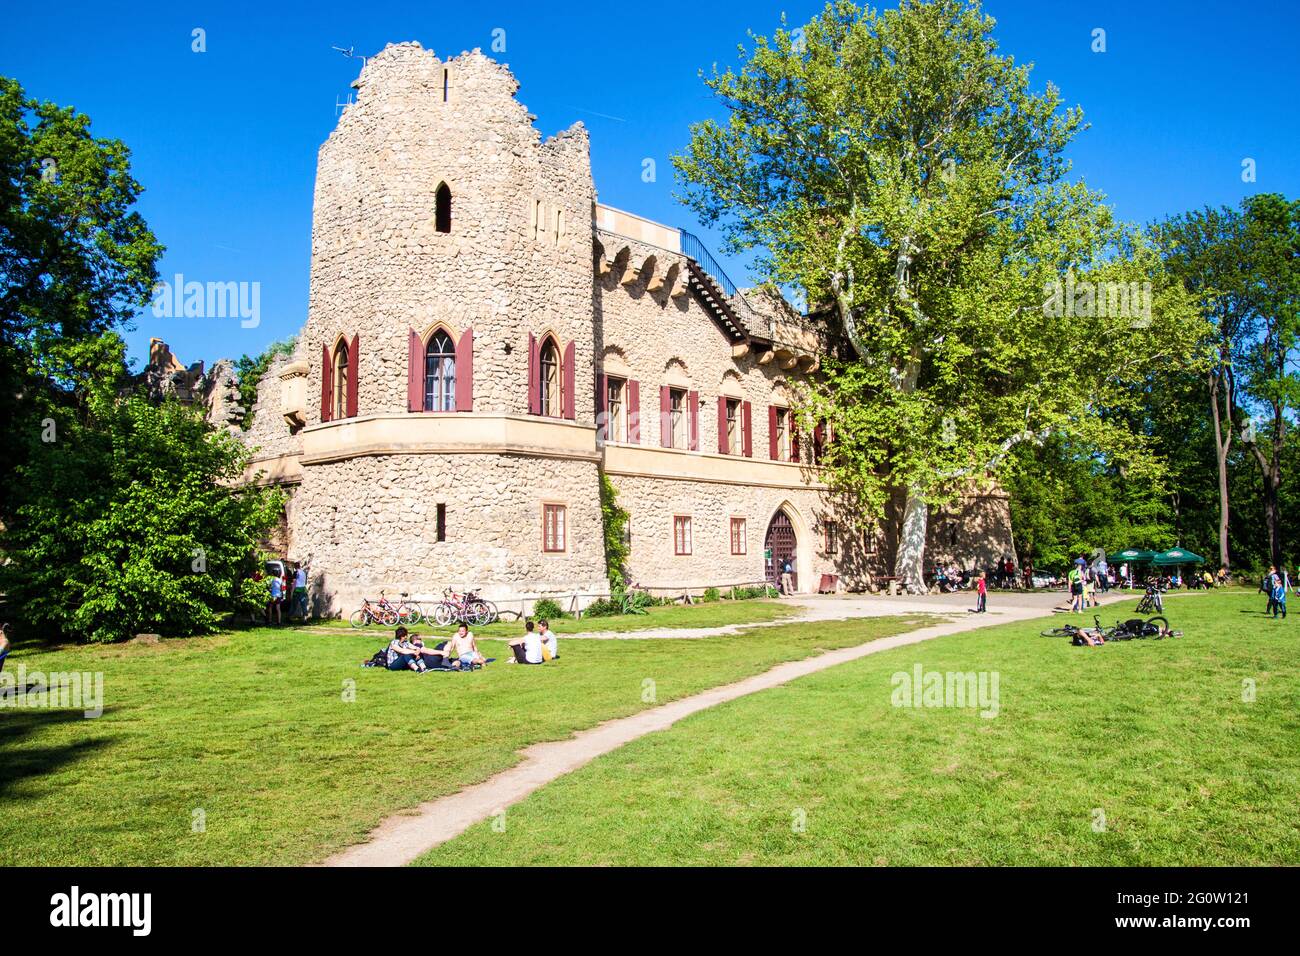 LEDNICE, REPUBBLICA CECA - MAGGIO 10: Romantico castello artificiale in rovina Januv hrad nella Moravia meridionale, Repubblica Ceca il 10 maggio 2014. Foto Stock